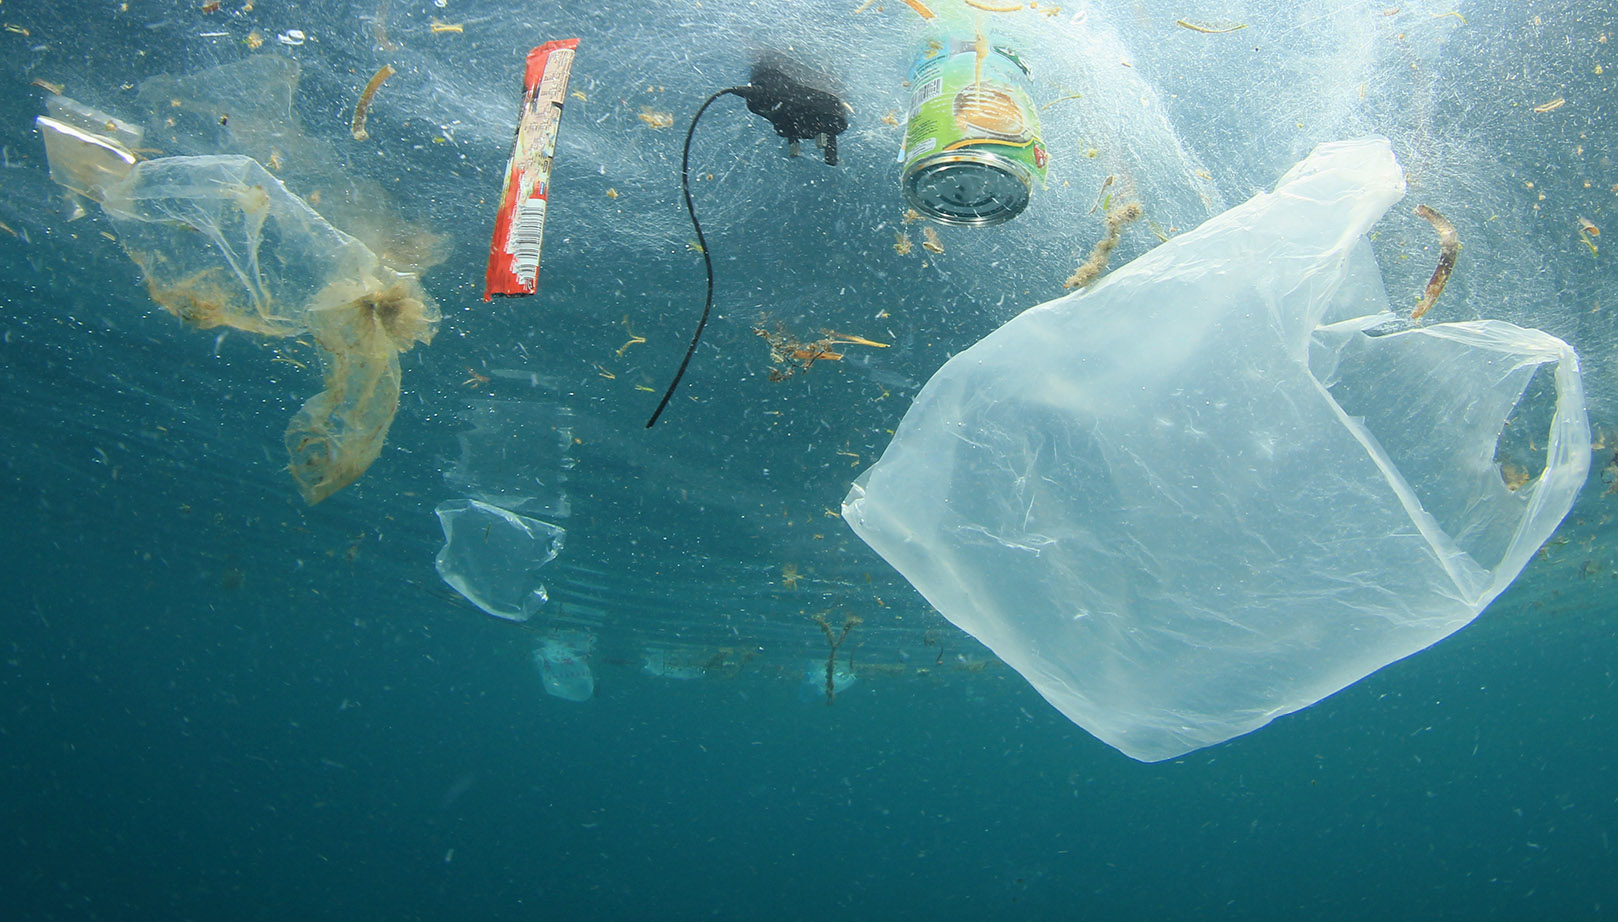  July Without Plastic: pagkatapos ng lahat, tungkol saan ang kilusan?